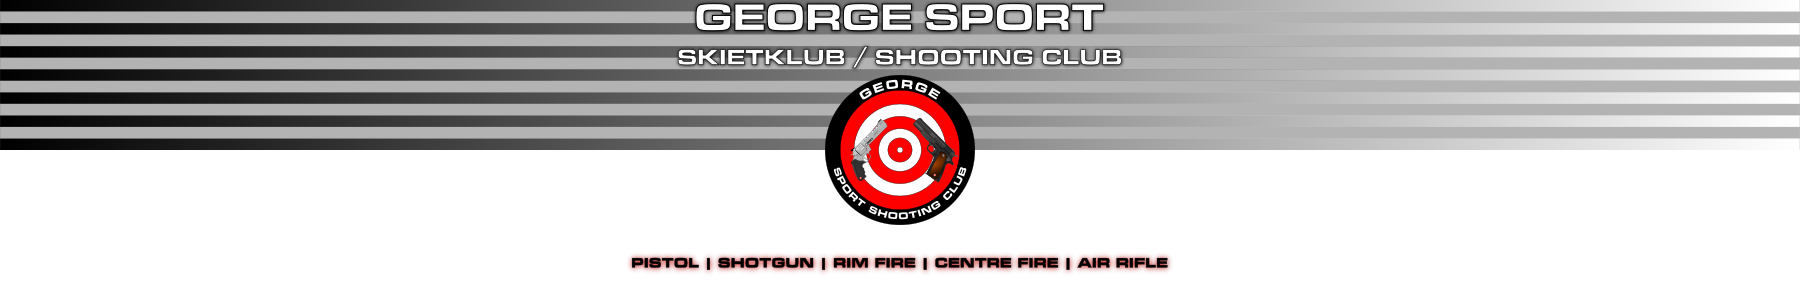 George Skietklub / Shooting Club